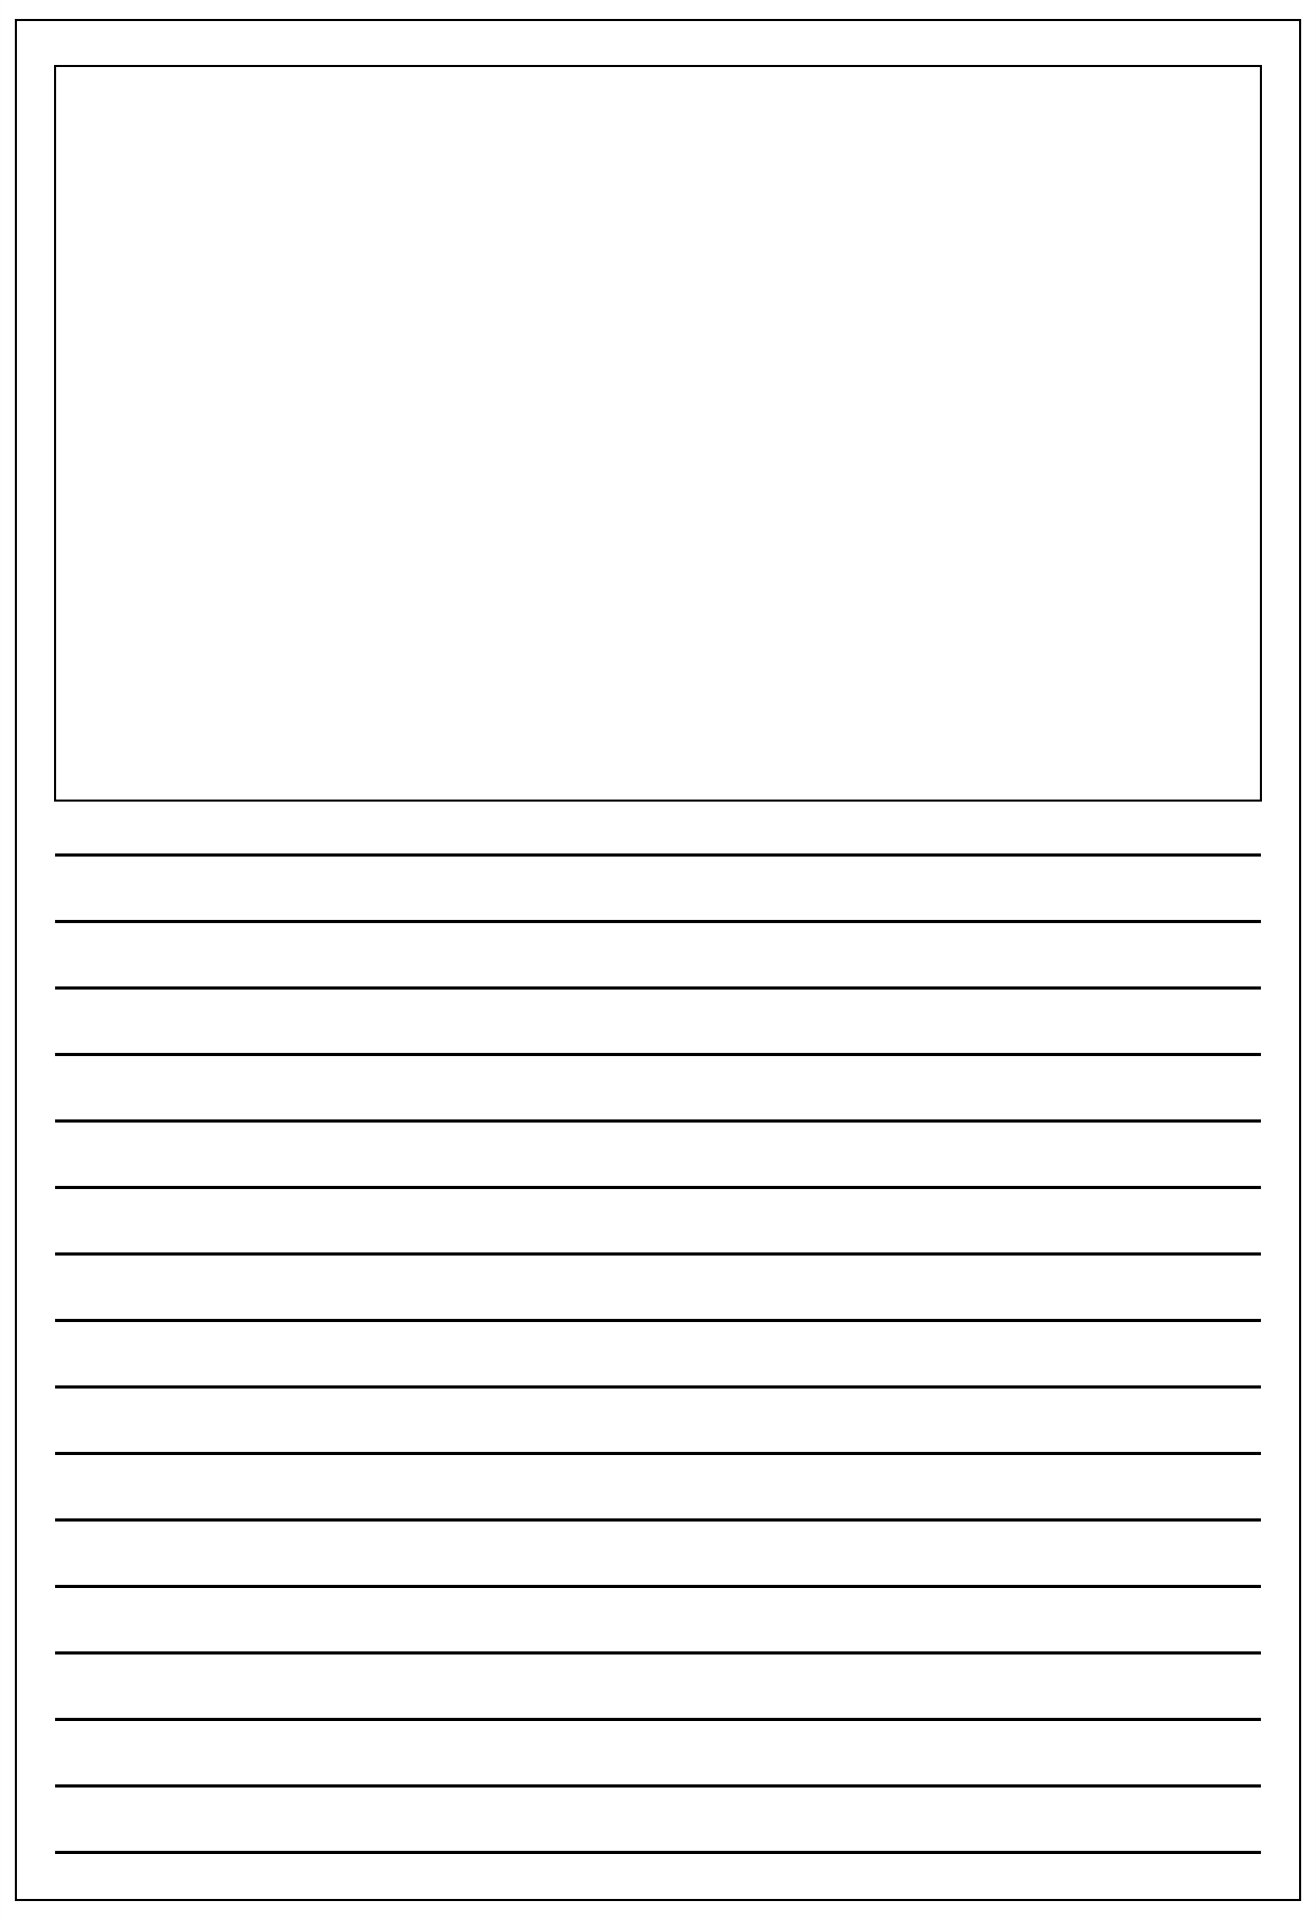 10 Best Printable Blank Writing Pages - printablee.com